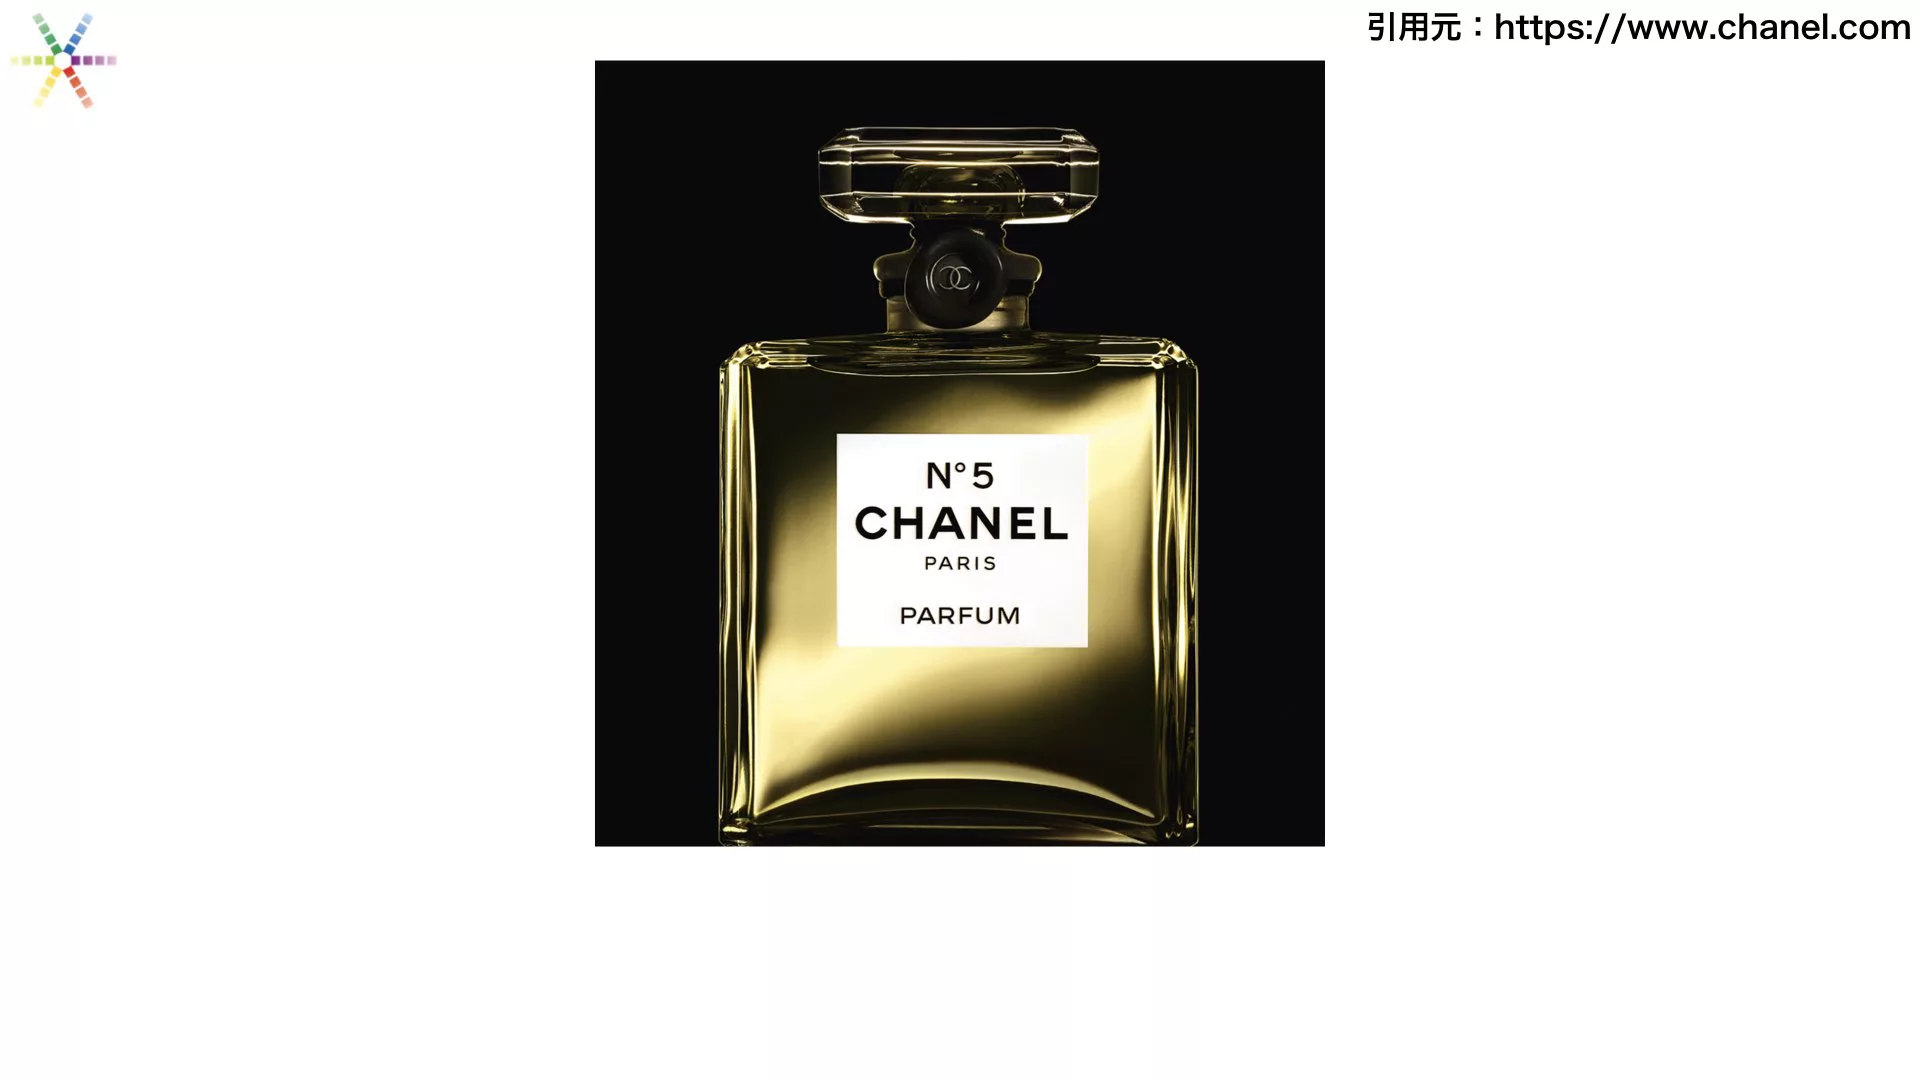 シャネル Chanel とは ブランド誕生と時計コレクションの歴史 ウォッチ買取応援団 有名店のロレックス買取相場を比較 店舗検索